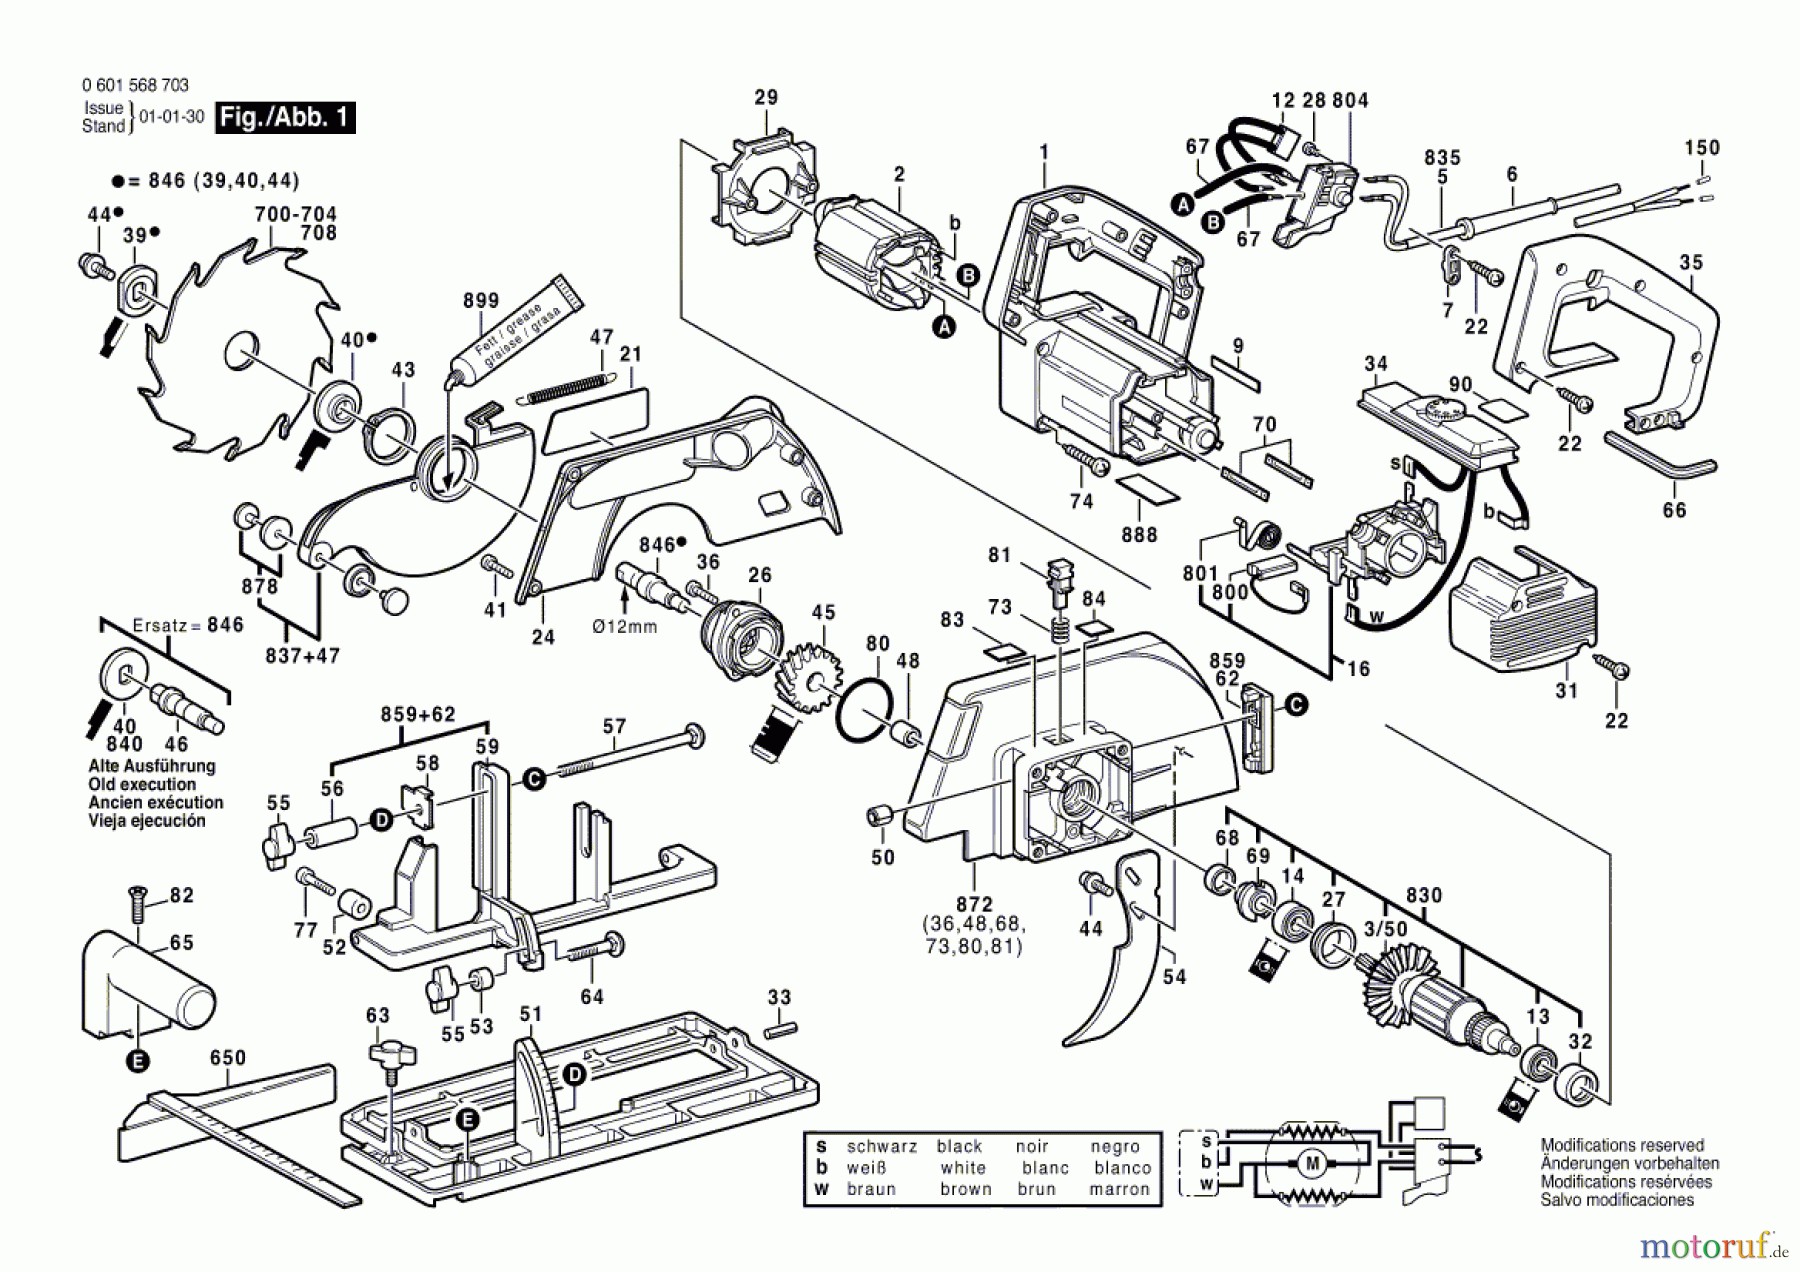  Bosch Werkzeug Handkreissäge GKS 66 CE Seite 1